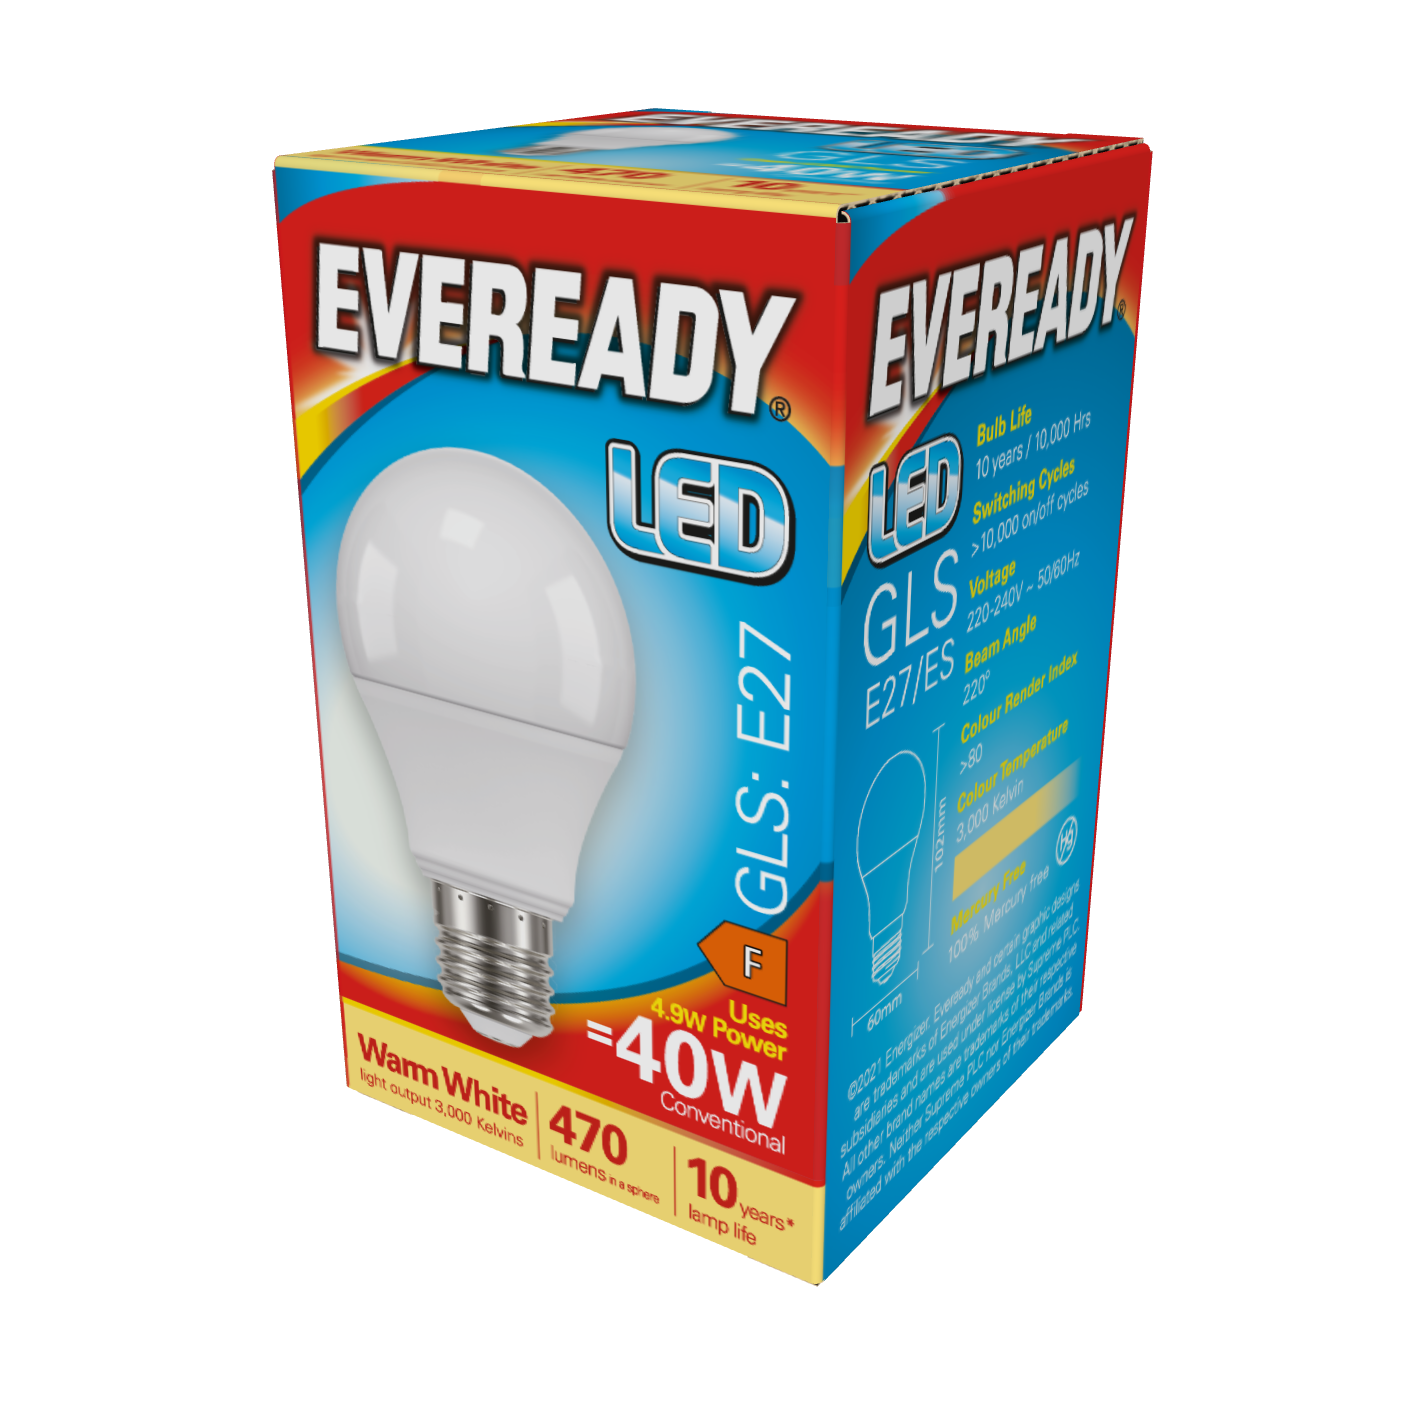 Eveready LED GLS E27 (ES) 470lm 4,9W 3.000K (Warmweiß), Packung mit 1 Stück